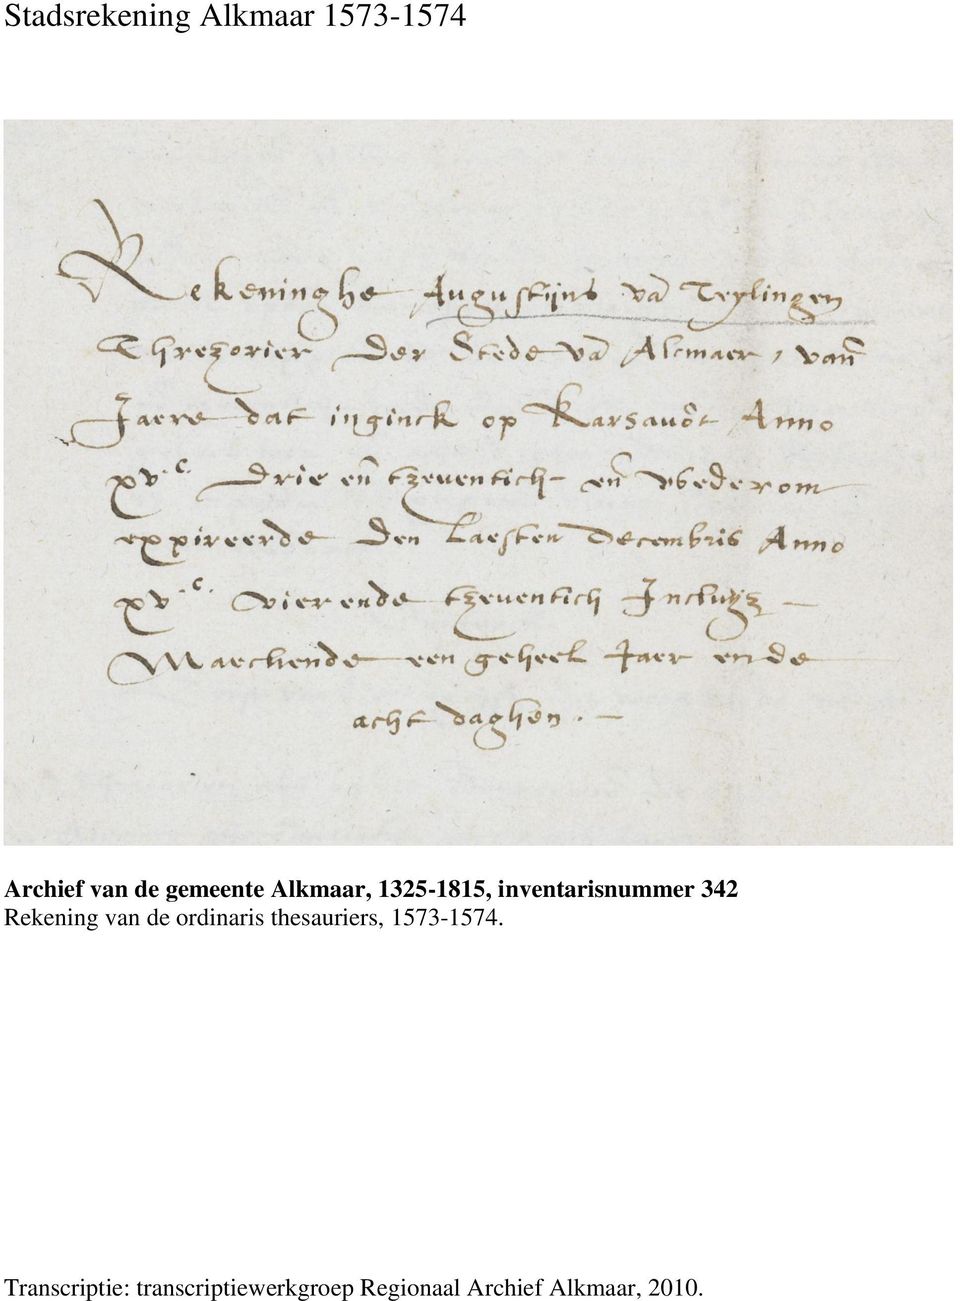 Rekening van de ordinaris thesauriers, 1573-1574.